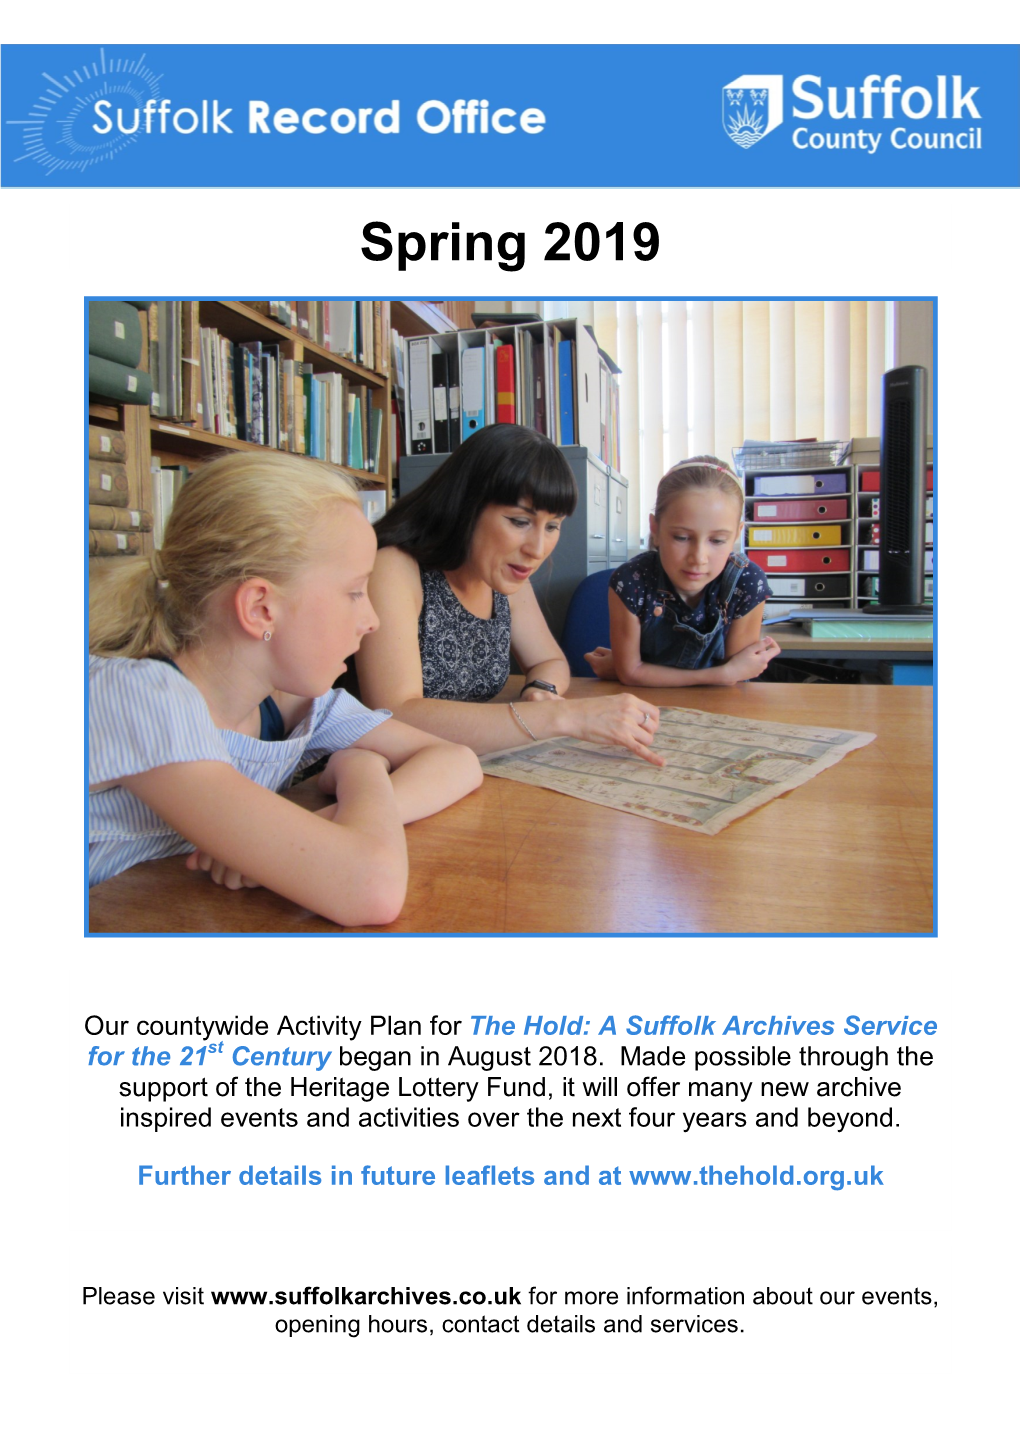 Spring 2019 Leaflet